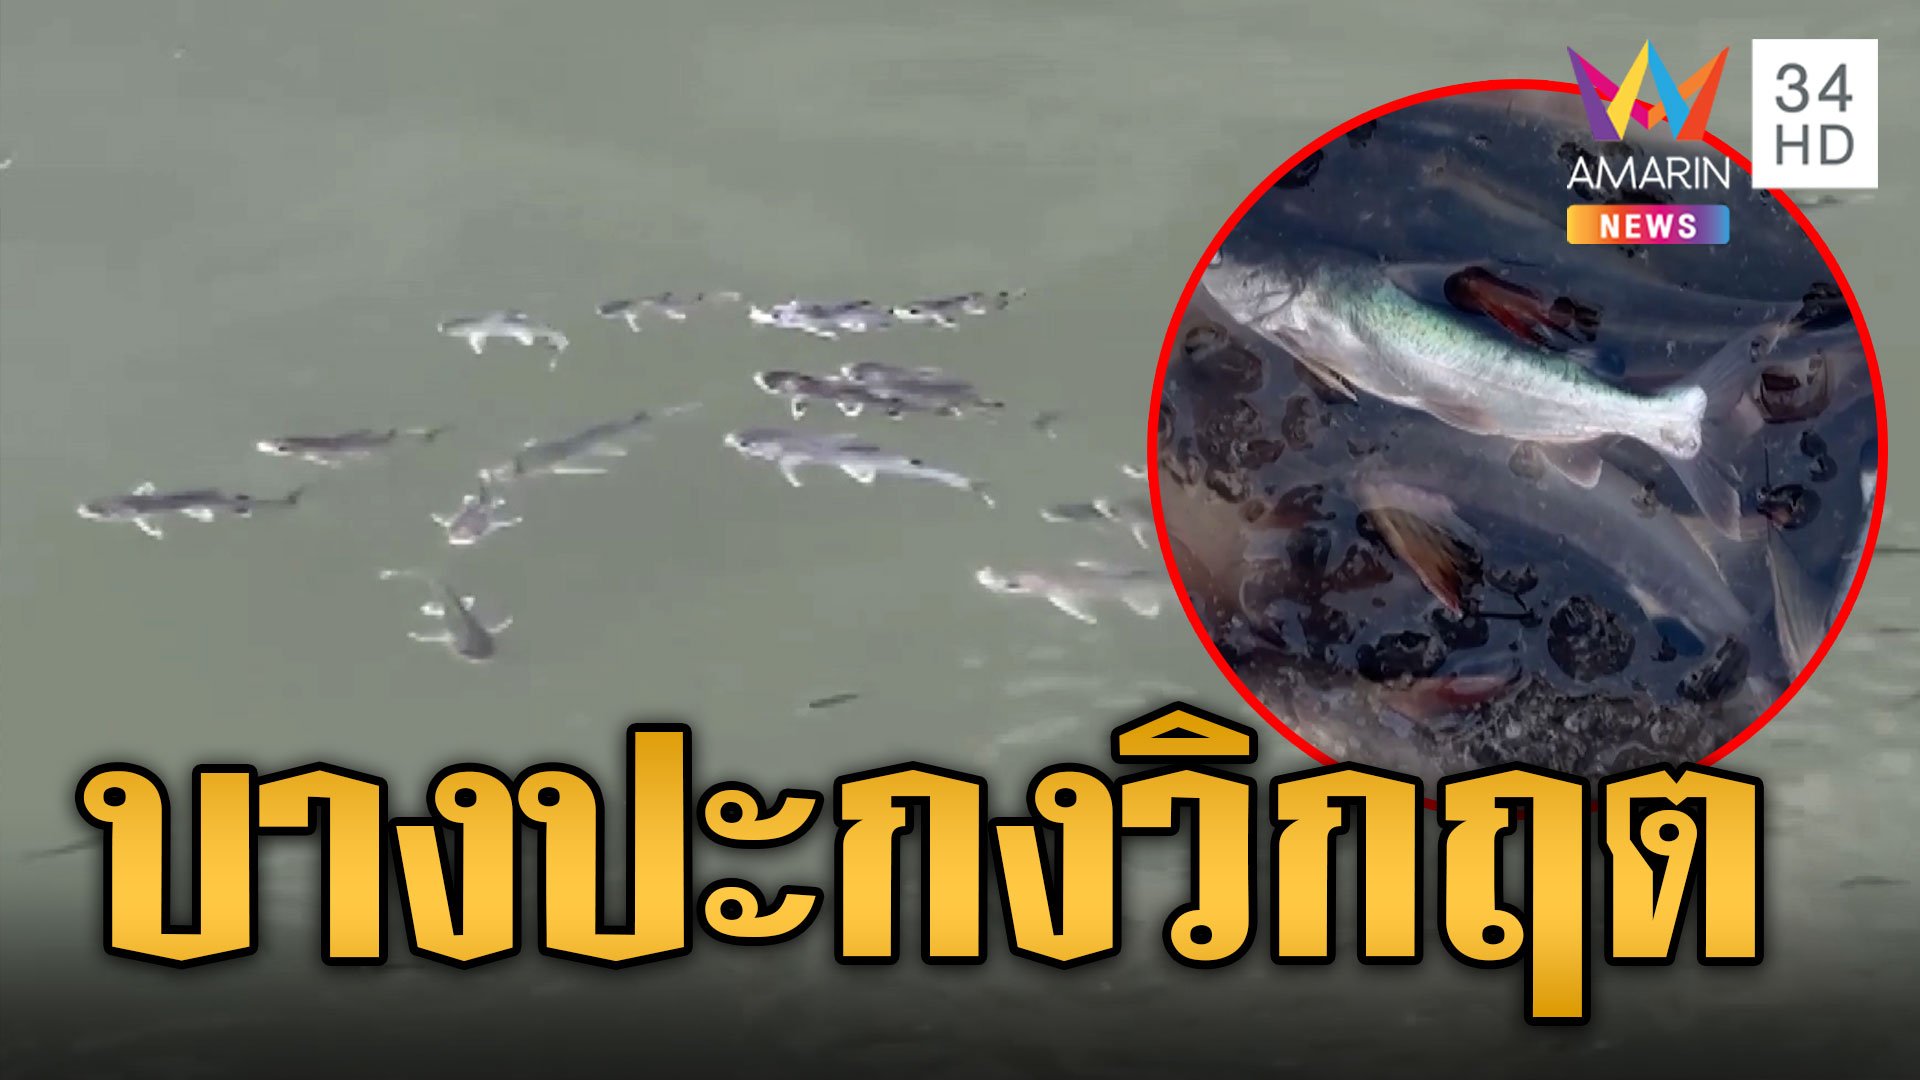 แม่น้ำบางปะกงเกิดวิกฤต กุ้งหอยปูปลาแห่ขึ้นมาหายใจ | ข่าวอรุณอมรินทร์ | 14 พ.ย. 66 | AMARIN TVHD34